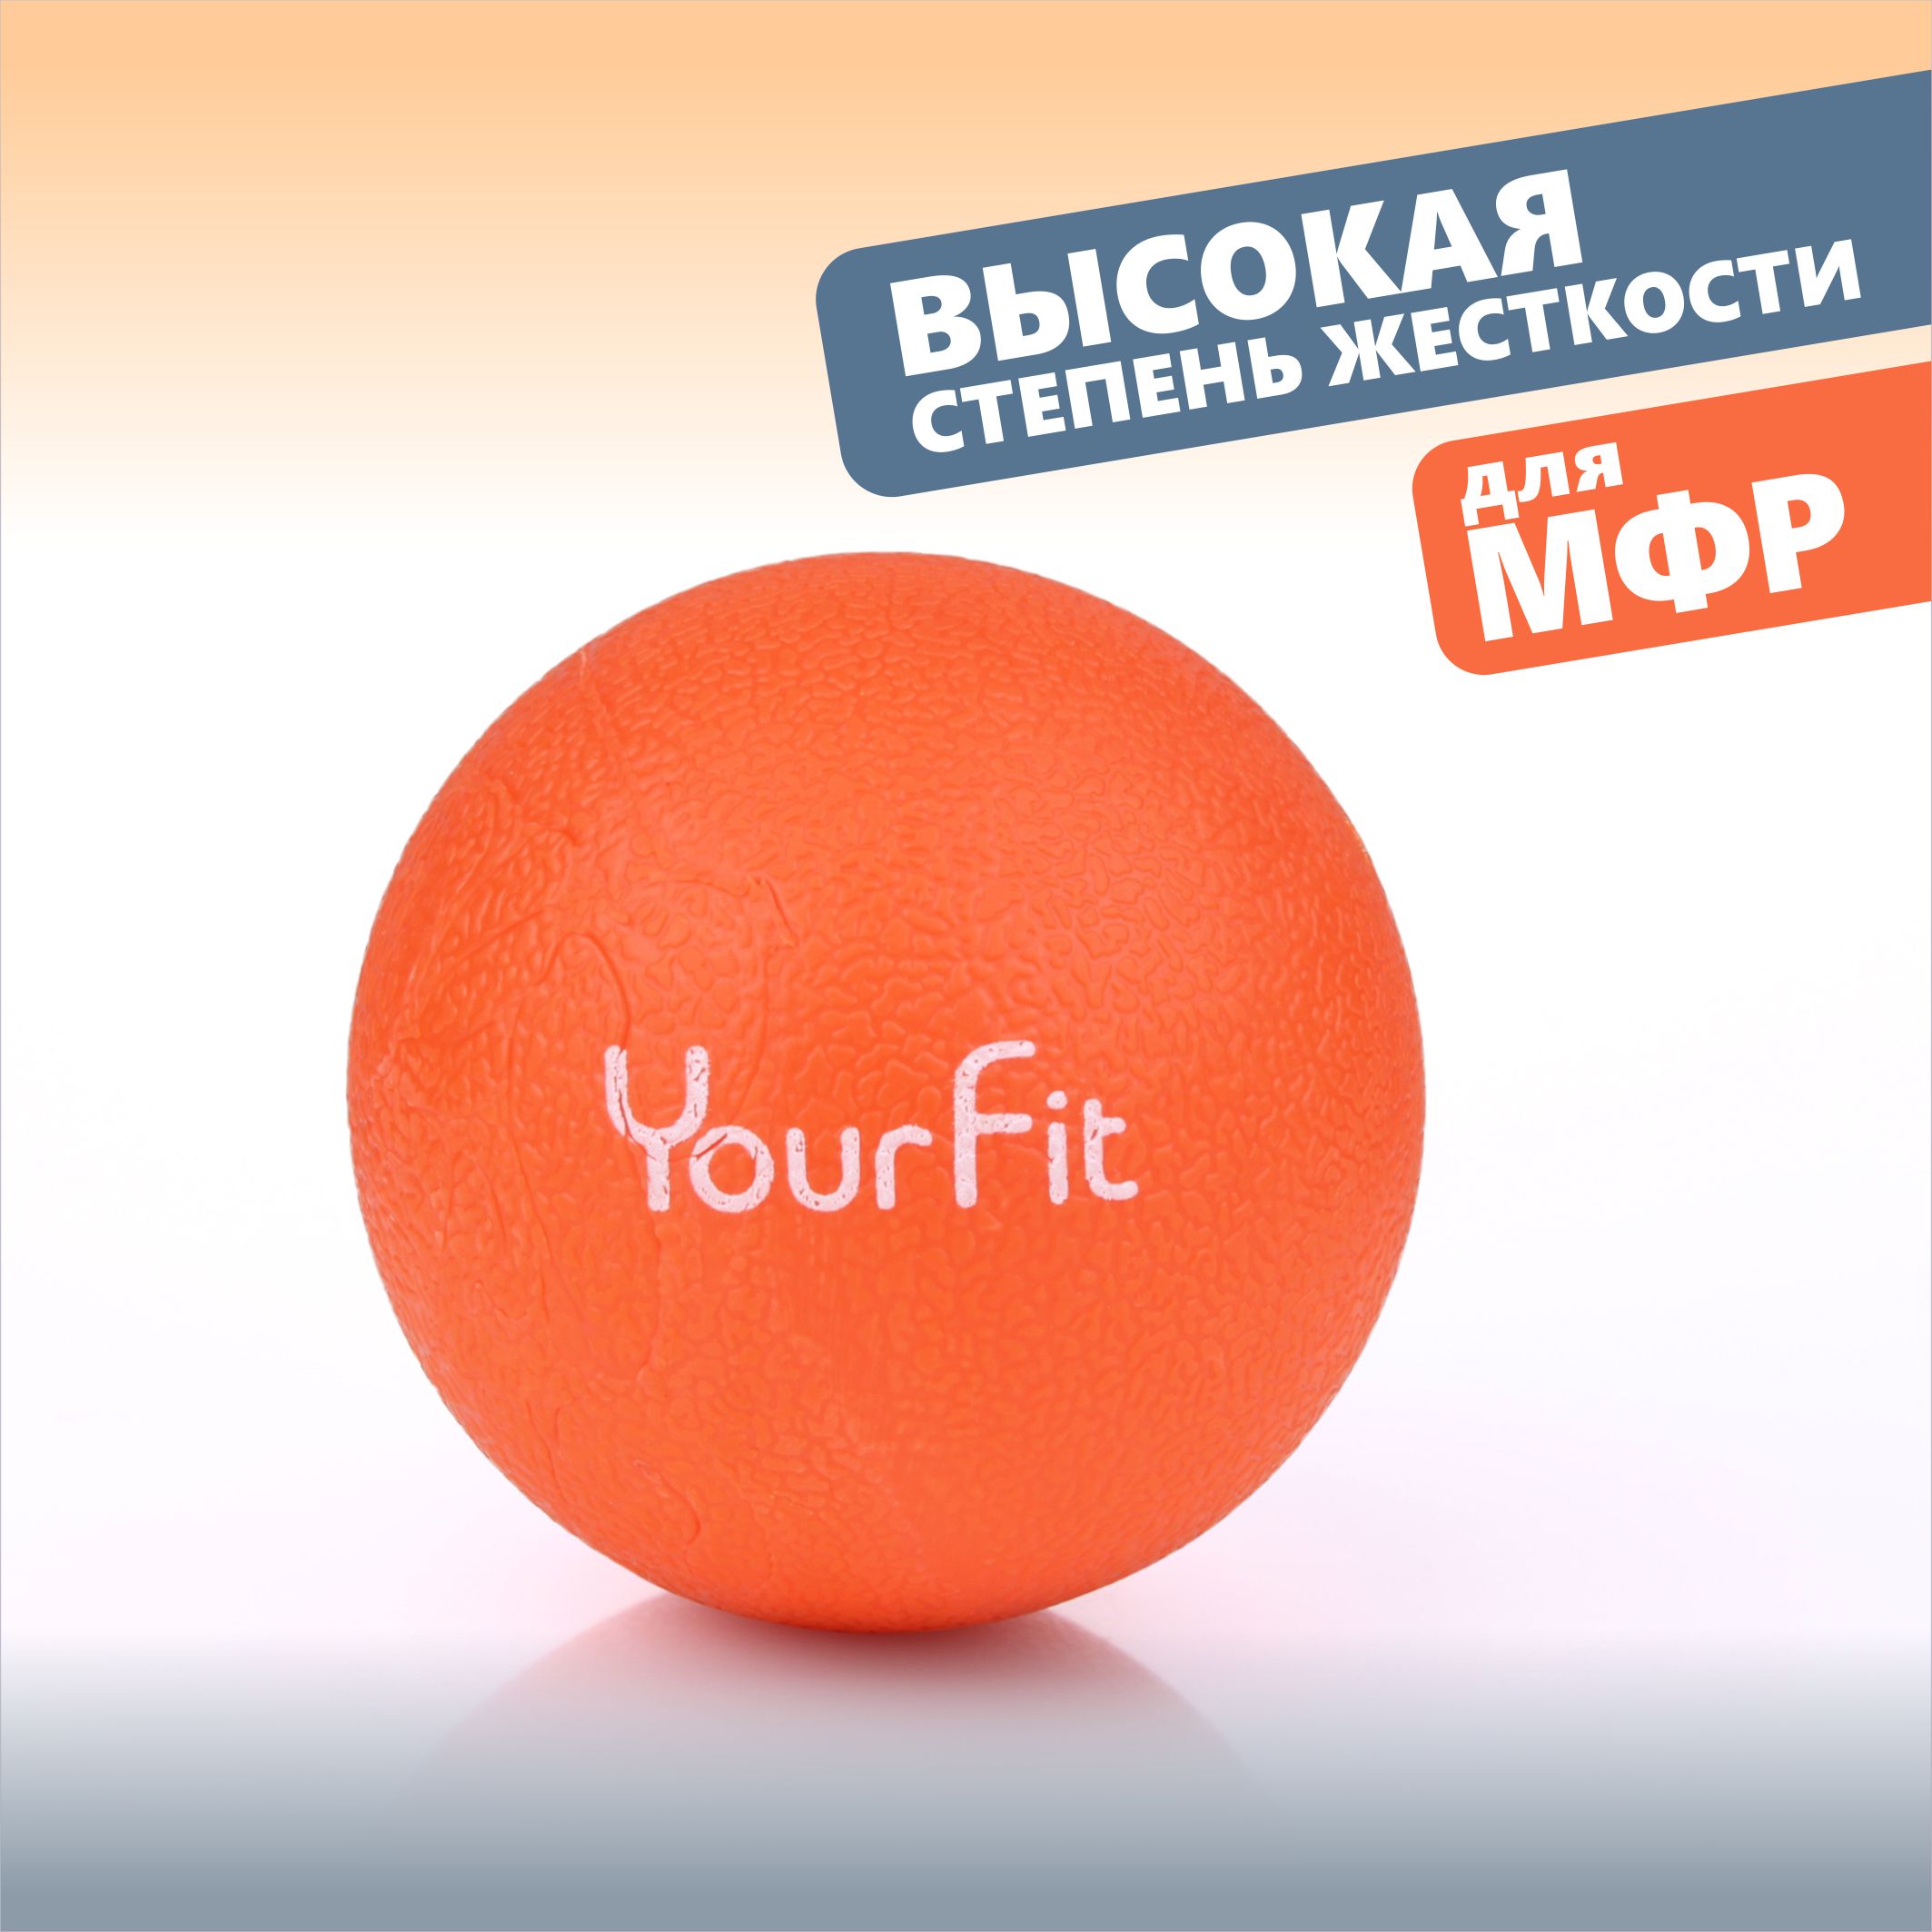 Массажный мяч YourFit ролик для мфр массажа оранжевый 6 см